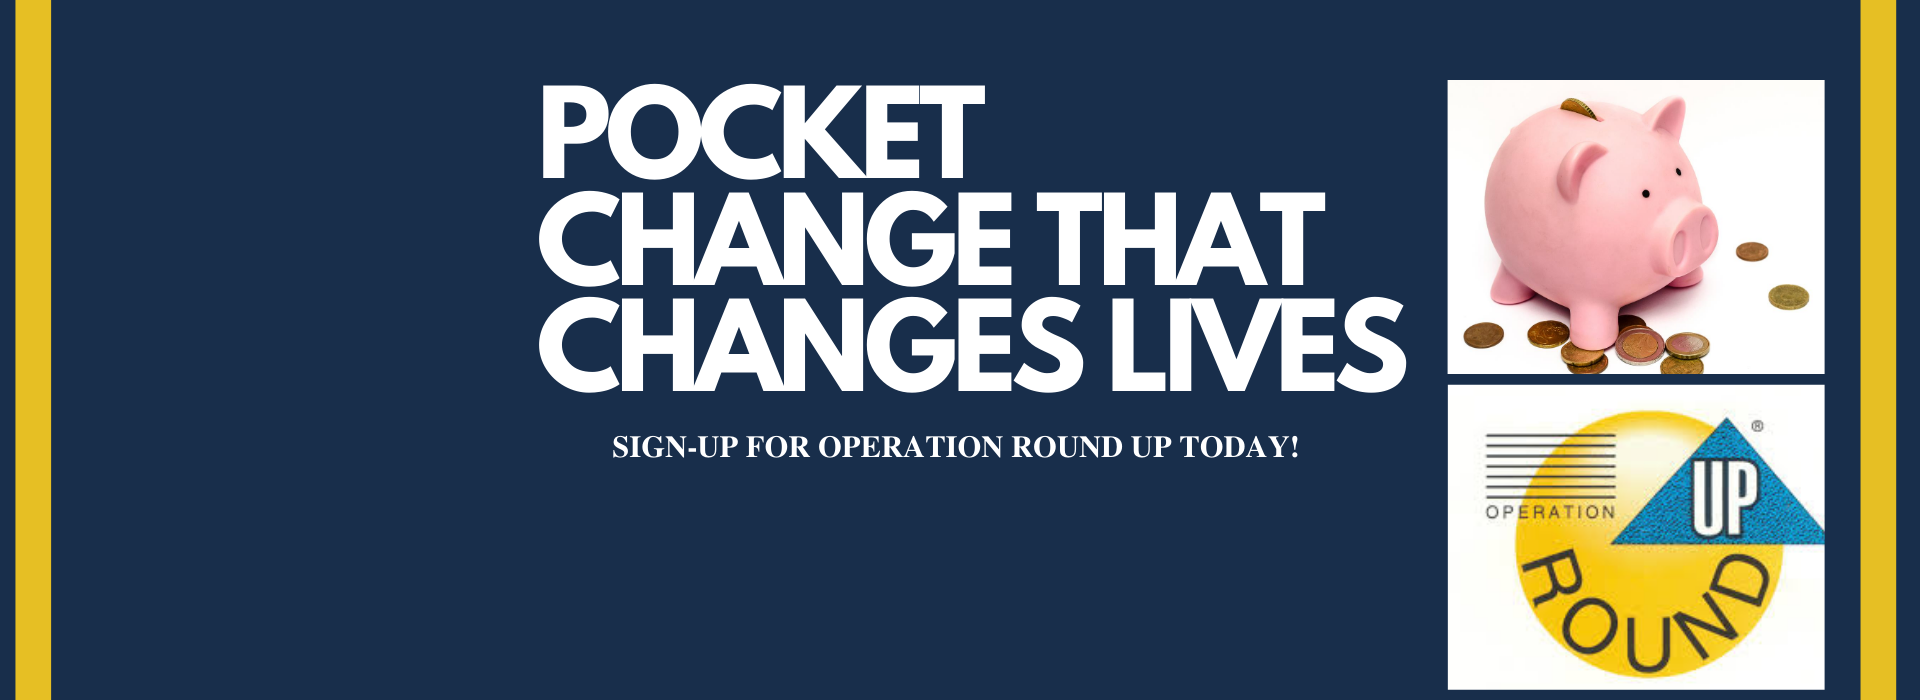 Pocket Change that Changes Lives